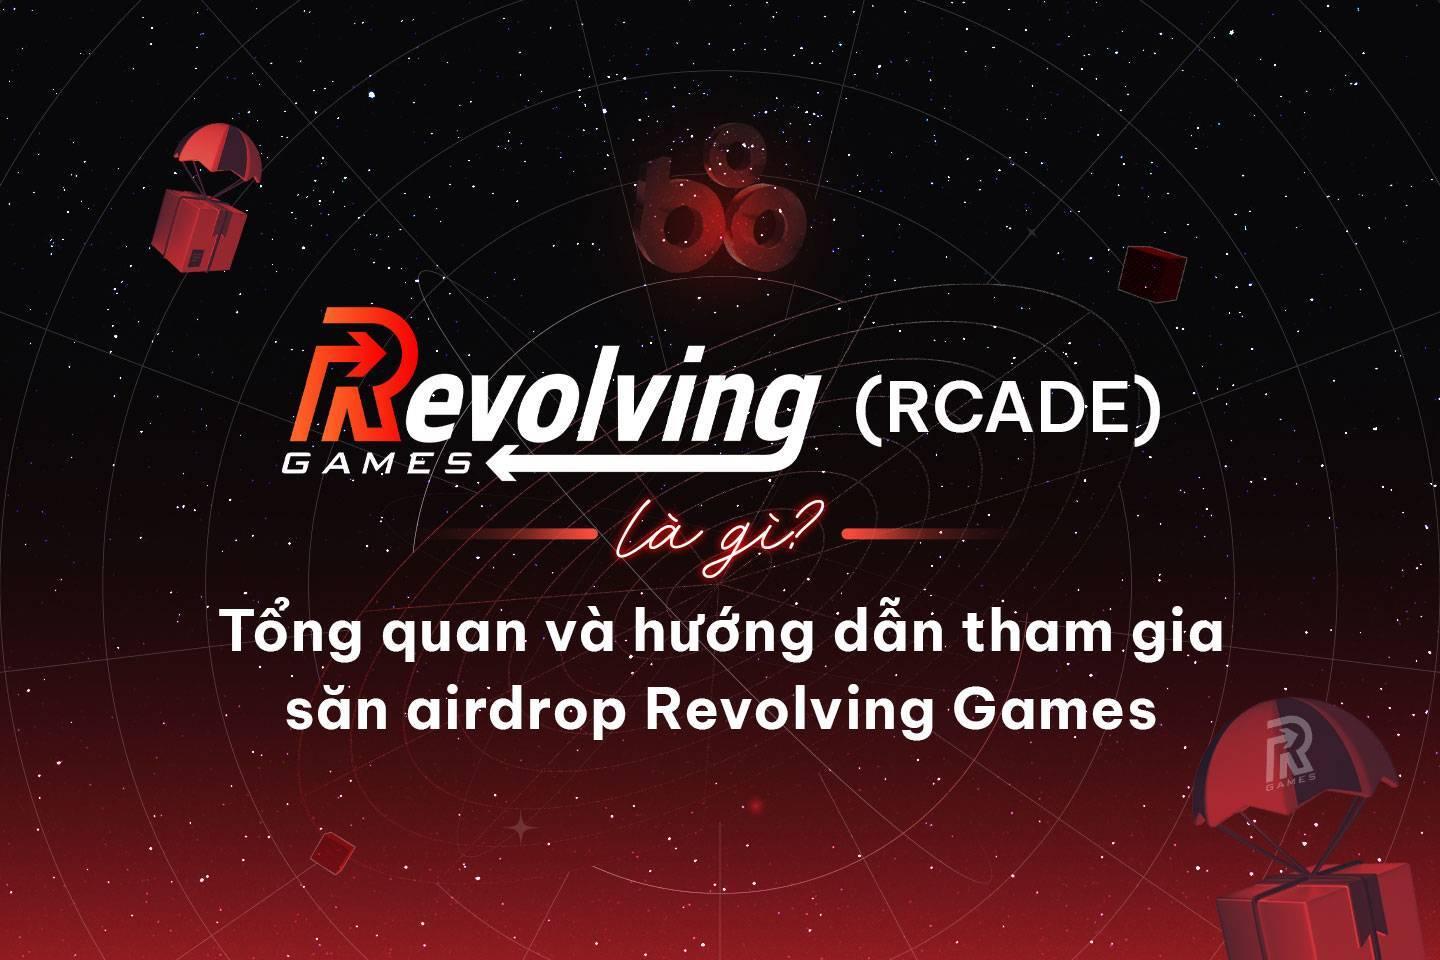 revolving-games-rcade-la-gi-tong-quan-va-huong-dan-tham-gia-san-airdrop-revolving-games